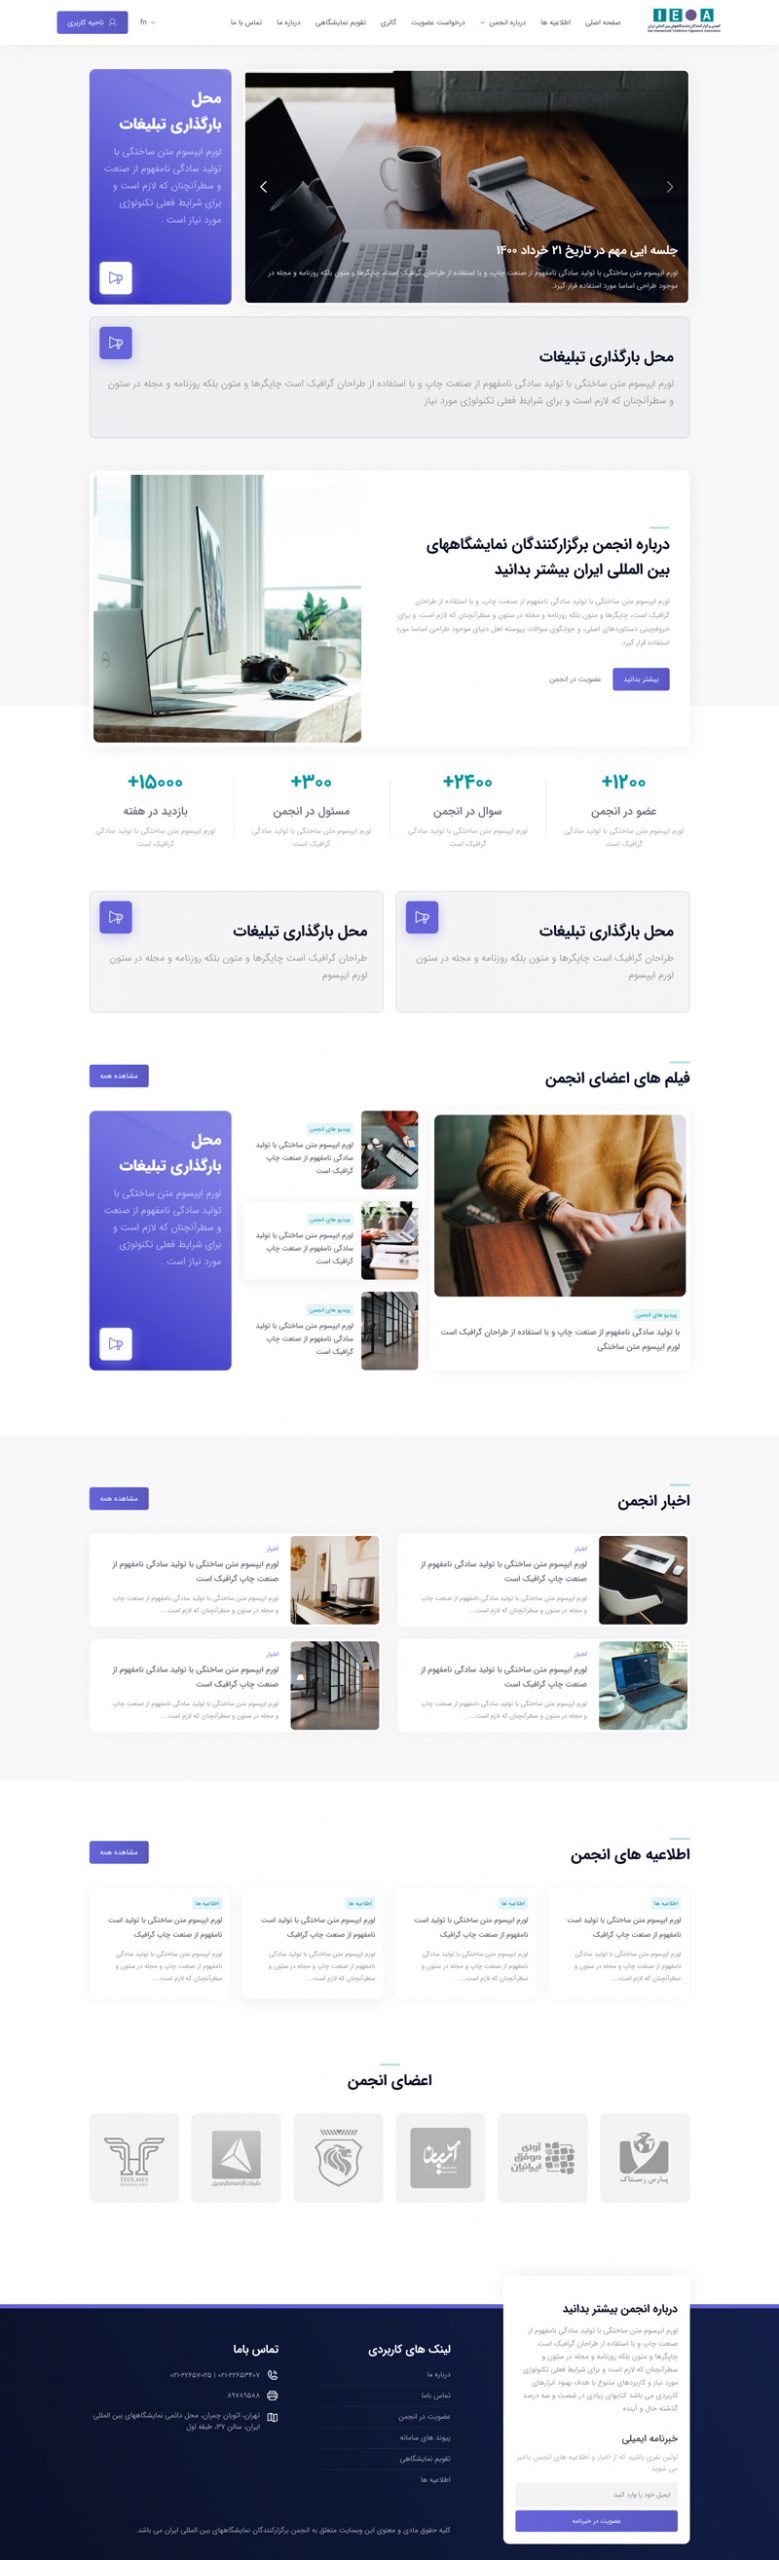 طراحی رابط کاربری انجمن برگزار کنندگان نمایشگاه های بین المللی ایران